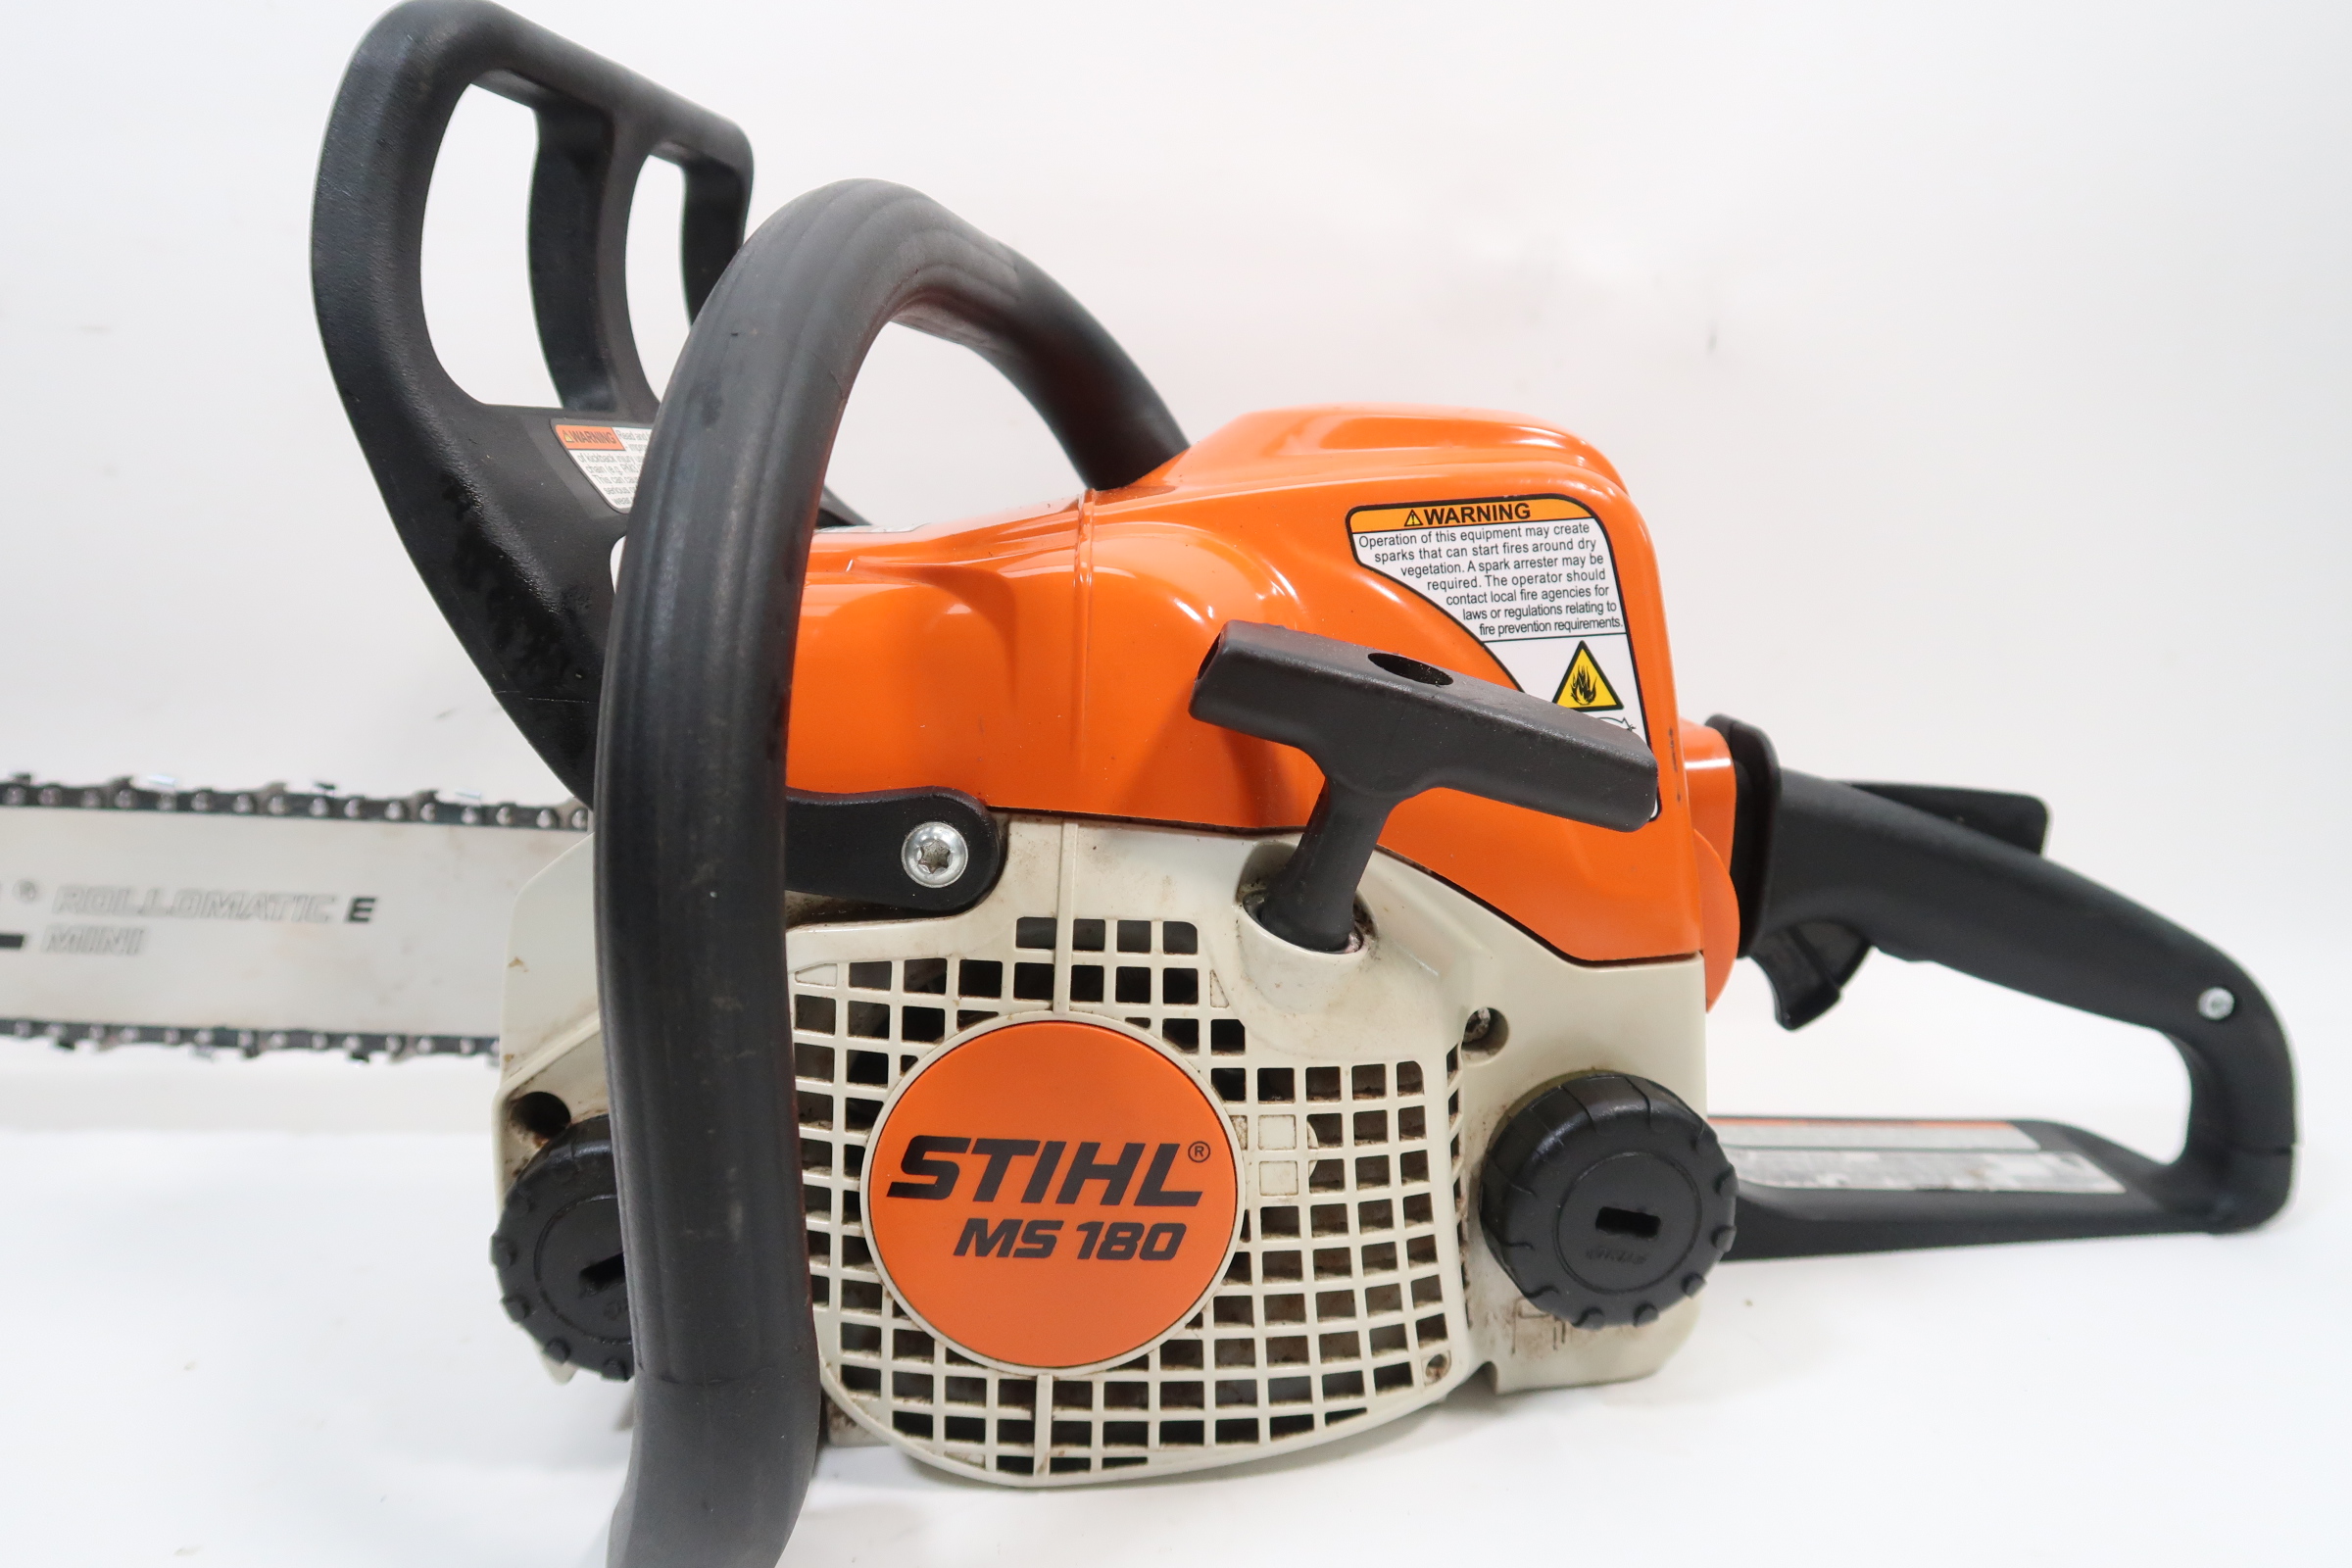 Stihl MS180 16 31.8cc Gas Chainsaw